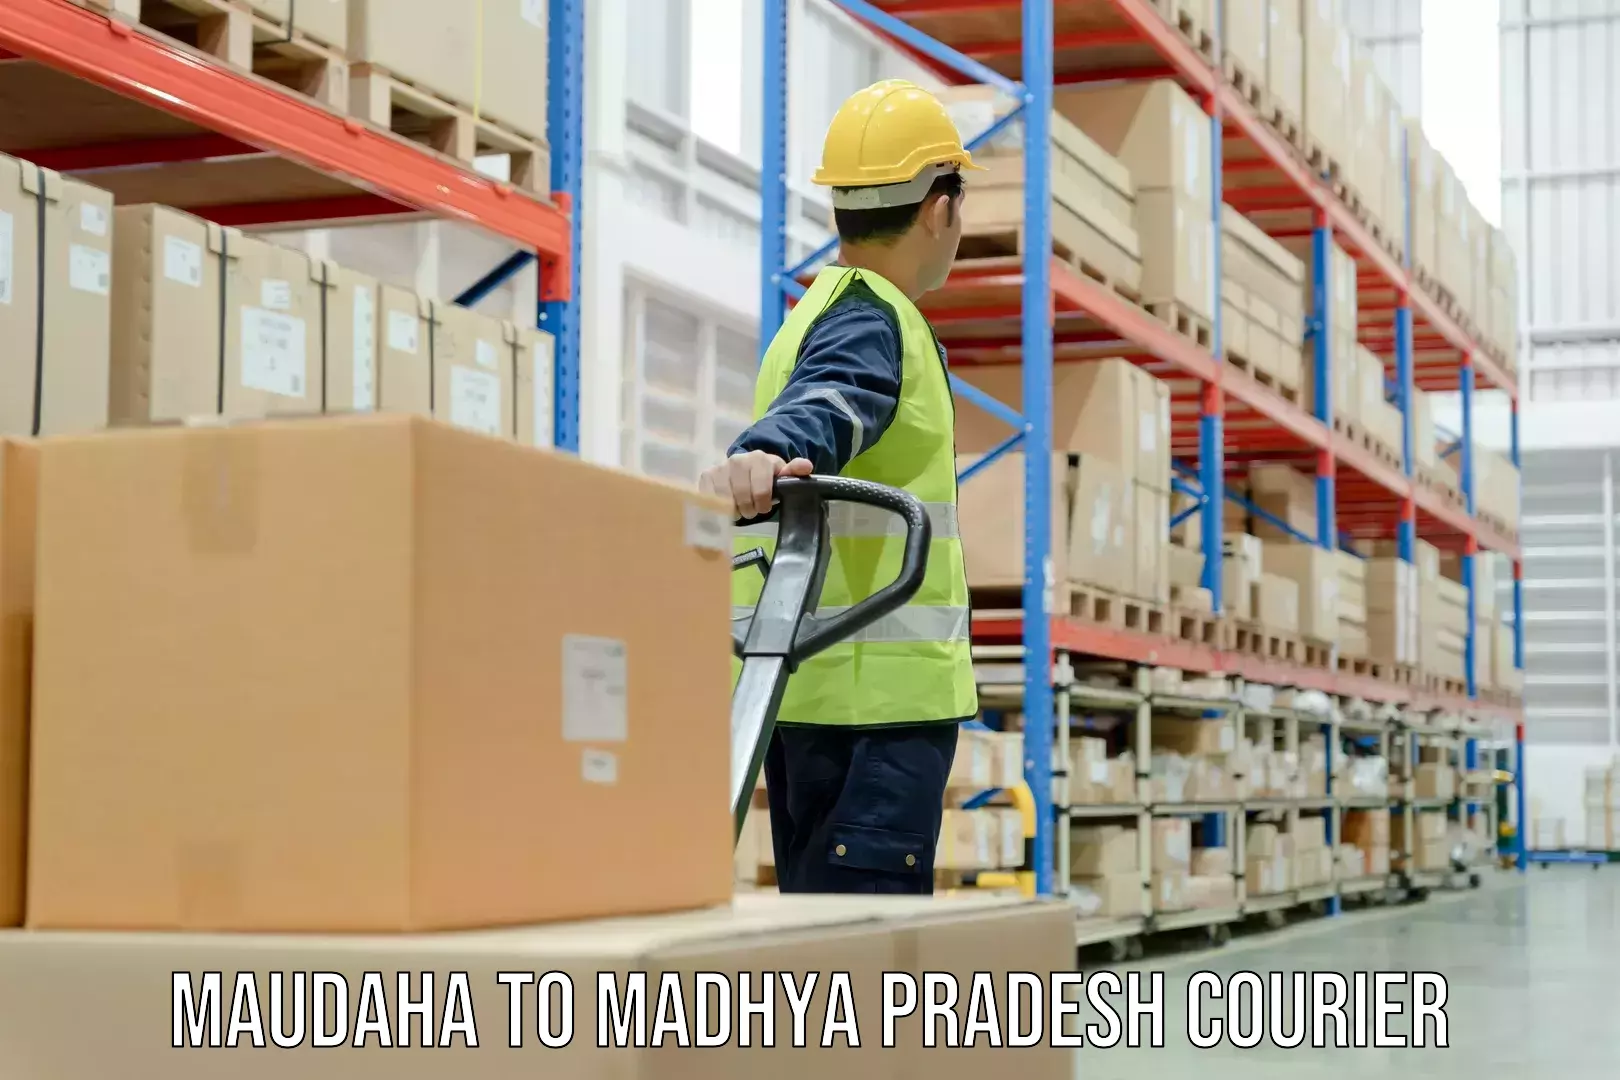 Doorstep delivery service Maudaha to Vidisha